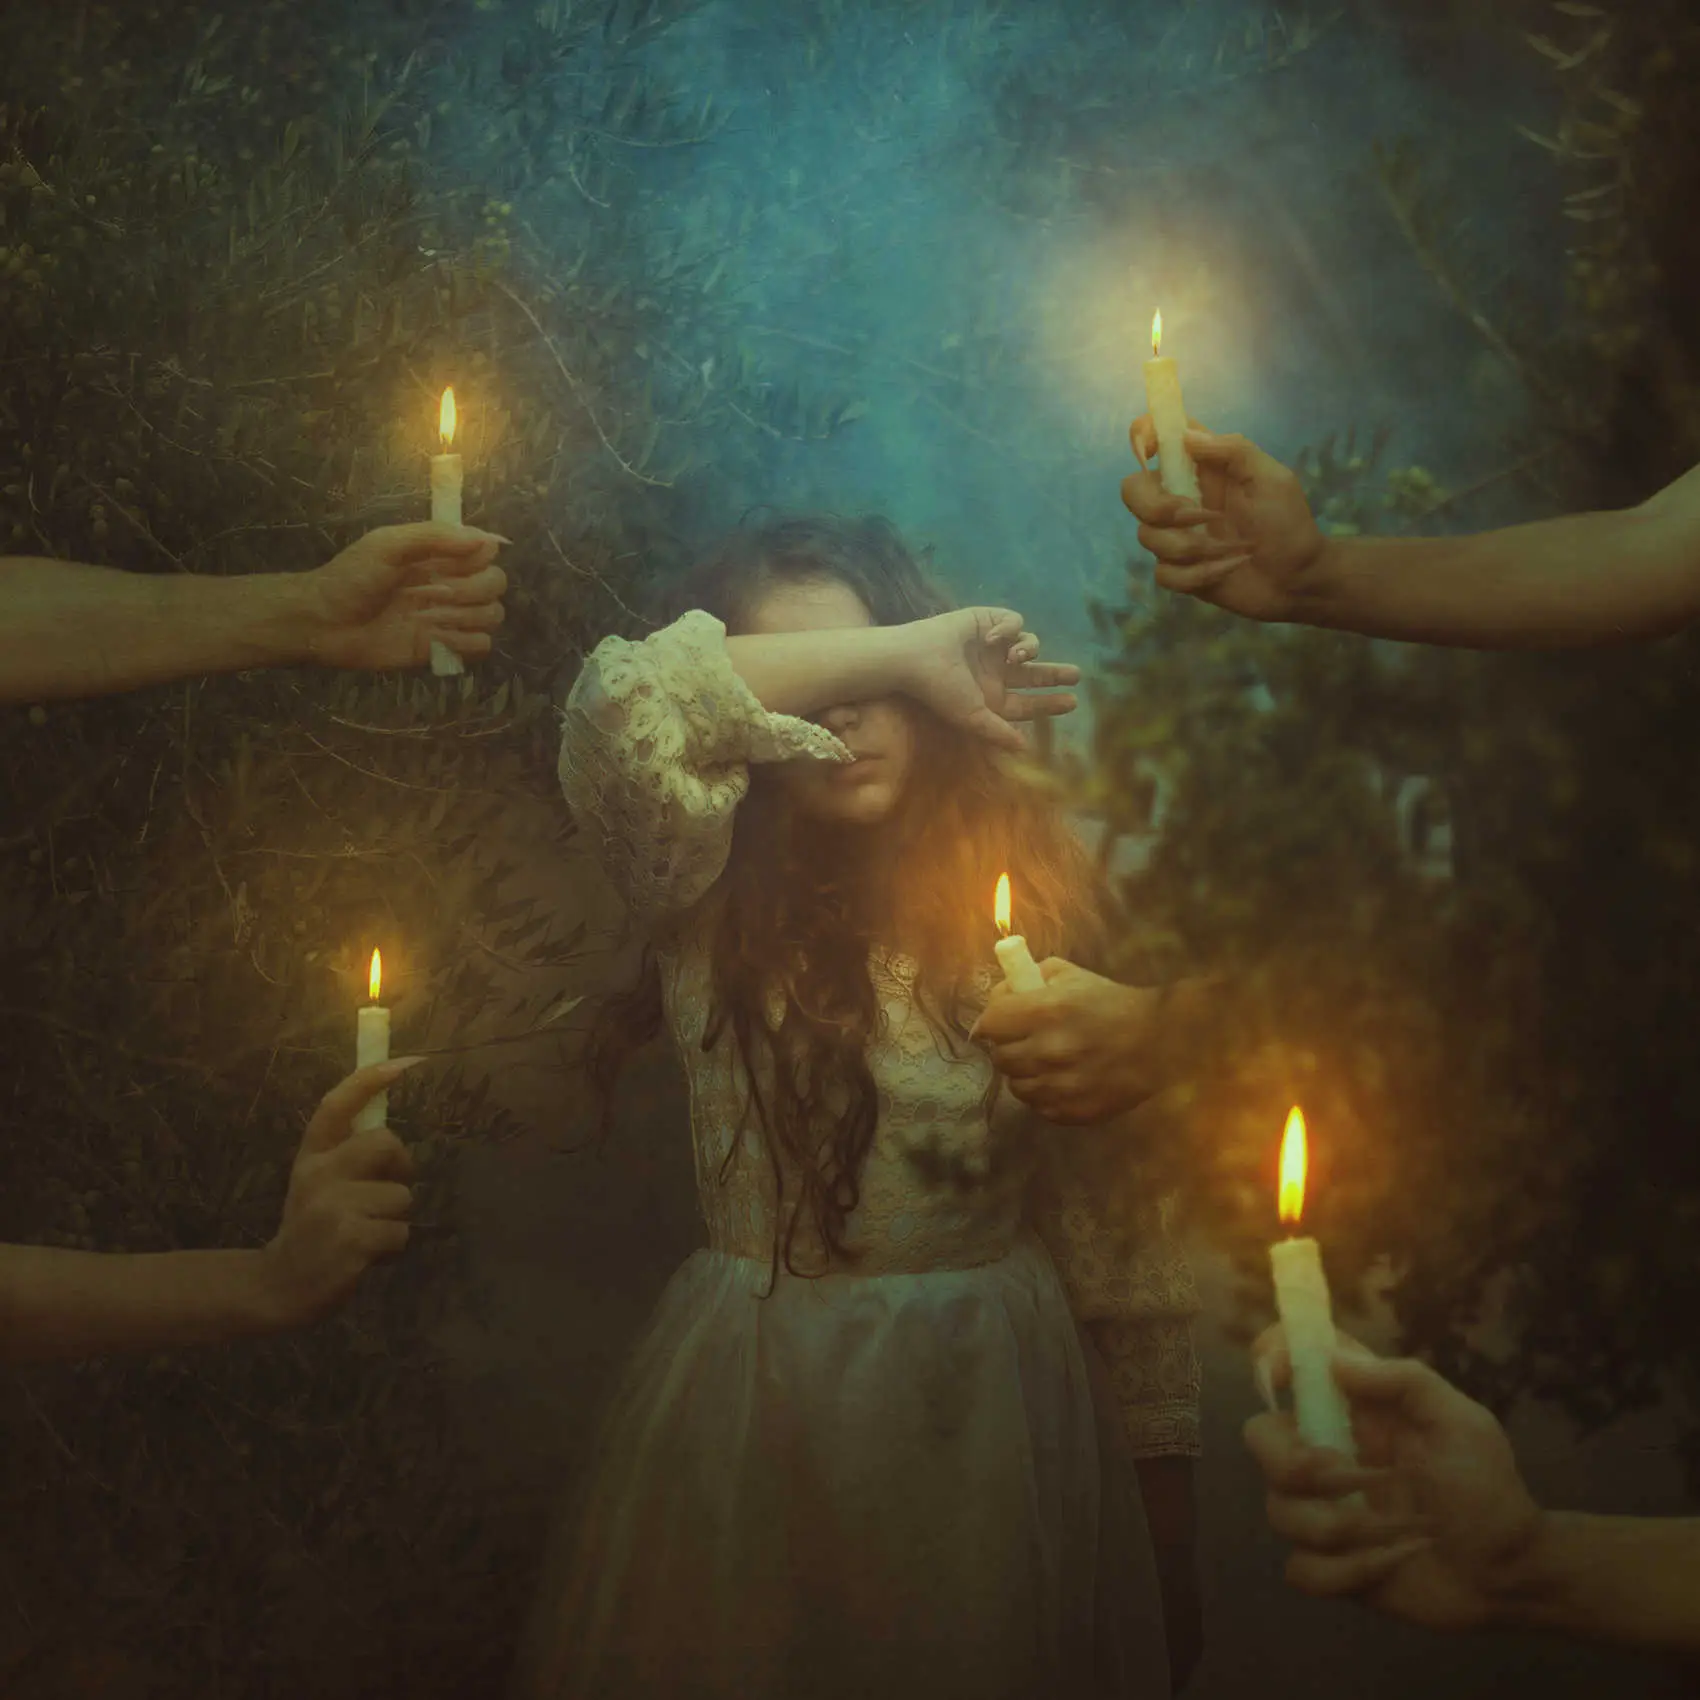 Fotografía de una niña con manos llenas de velas encendidas